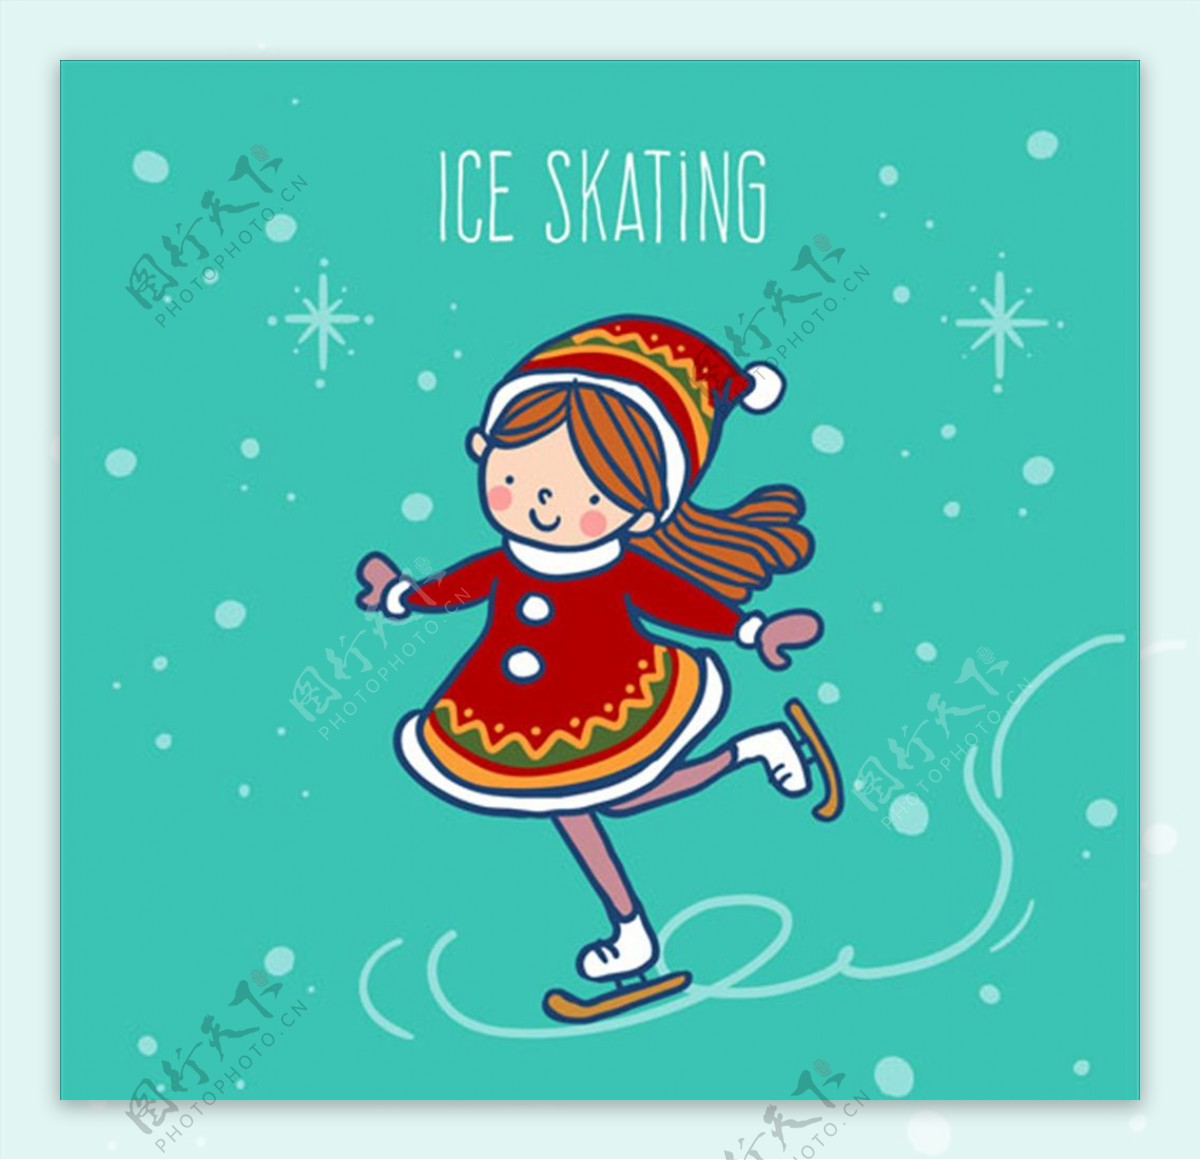 手绘简笔女孩在滑冰